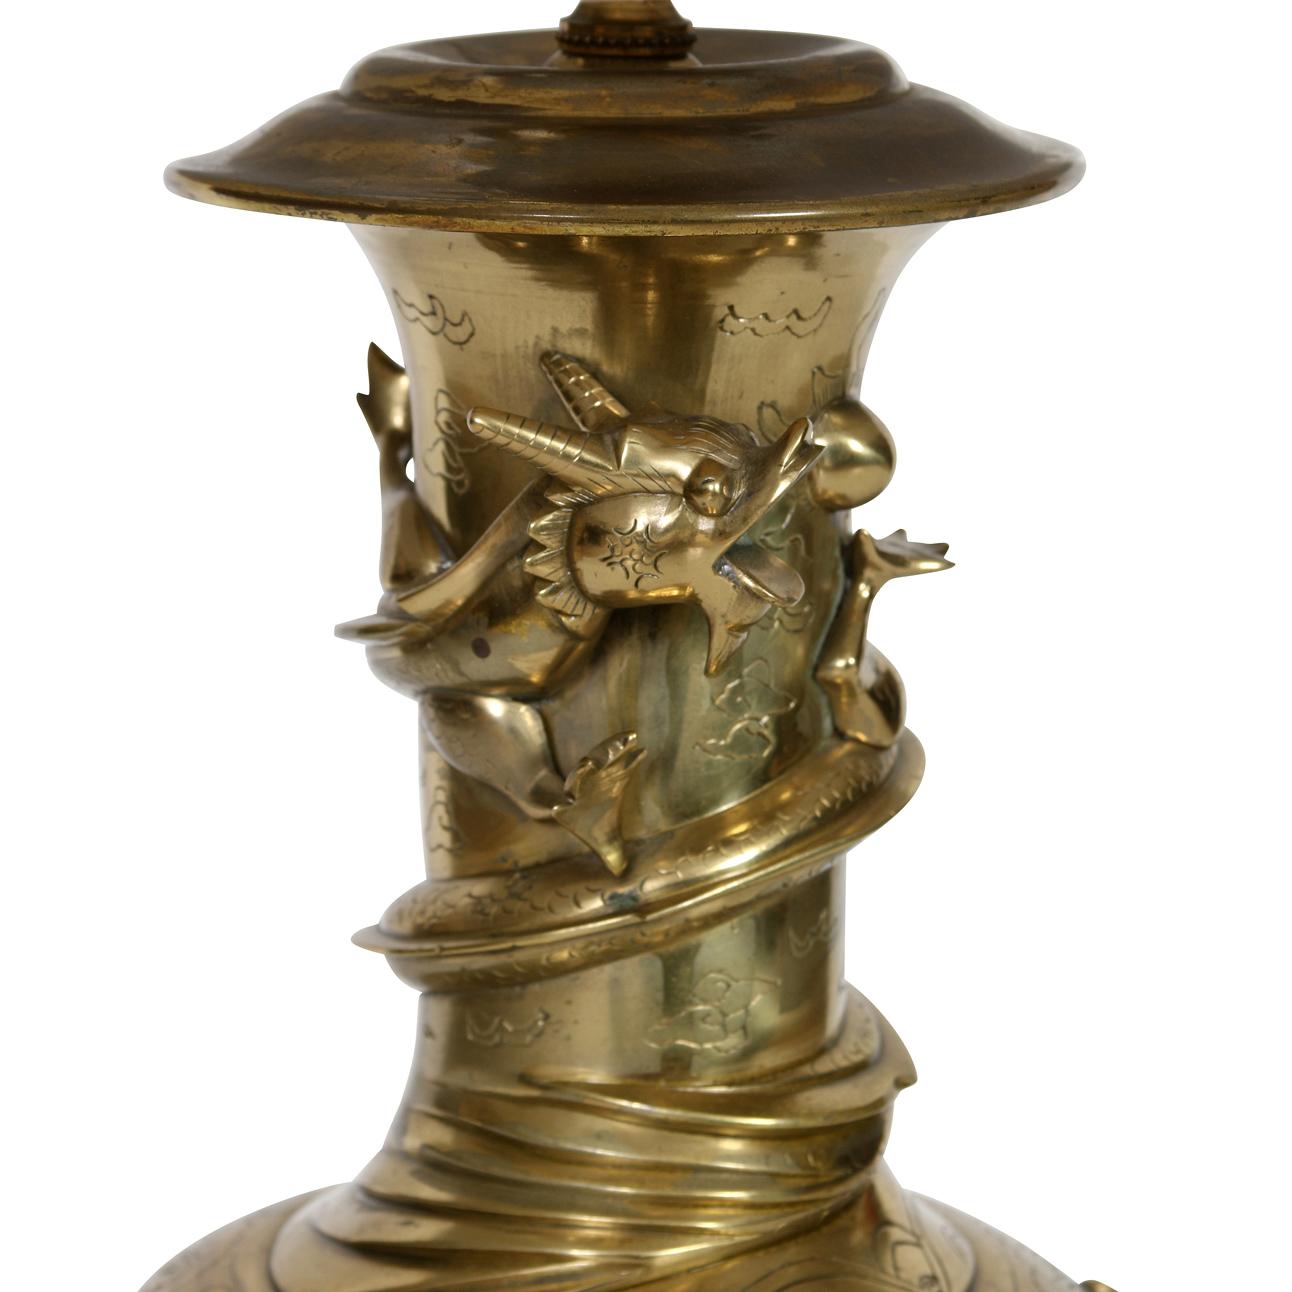 Eine Vintage-Bronze-Tischlampe mit erhabenen Drachen in Relief, die die Lampe umkreisen.  Die Lampe im asiatischen Stil steht auf einem runden Sockel aus dunklem Holz. Der Lampenschirm ist separat erhältlich.